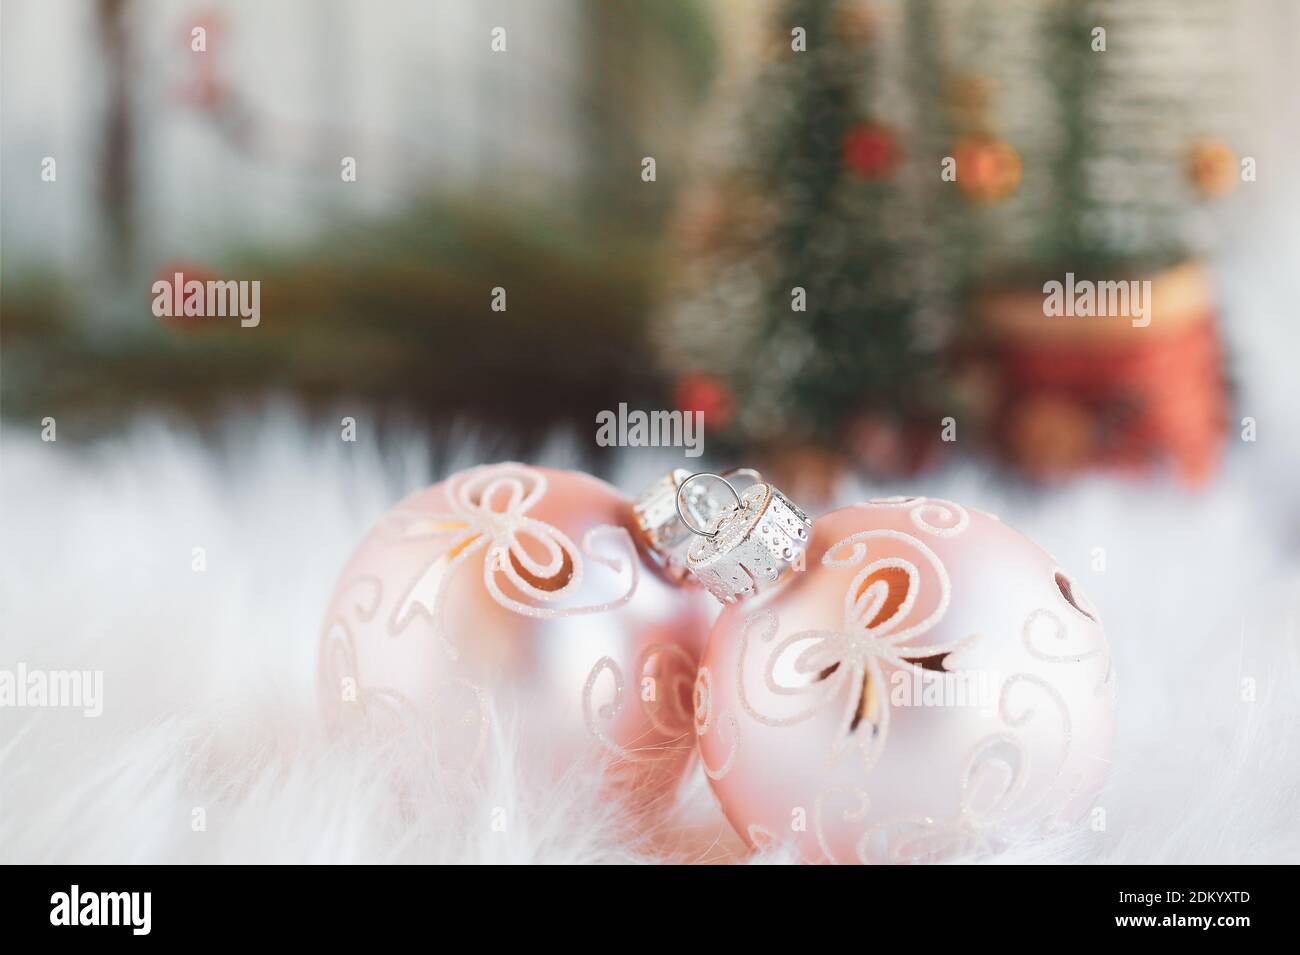 Deux décorations de Noël roses couchés sur un tapis blanc. Mise au point sélective avec des arbres de Noël flous en arrière-plan. Banque D'Images